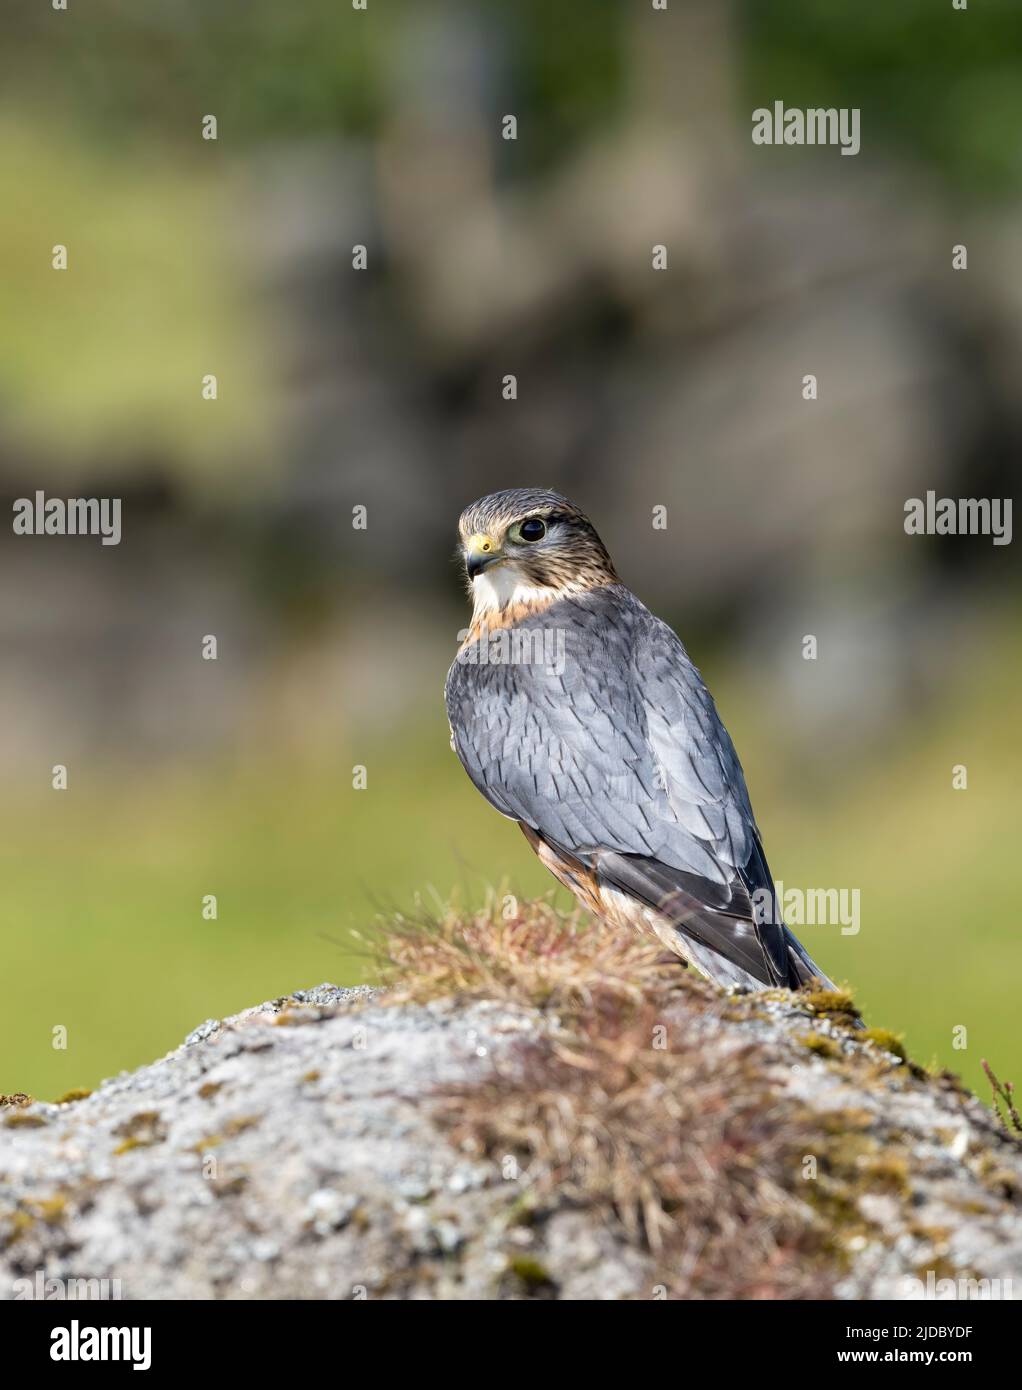 Un gardien, Merlin, (Falco columbarius), l'un des plus petits oiseaux de proie du Royaume-Uni, se dresse sur la roche parmi les landes couvertes de bruyère Banque D'Images